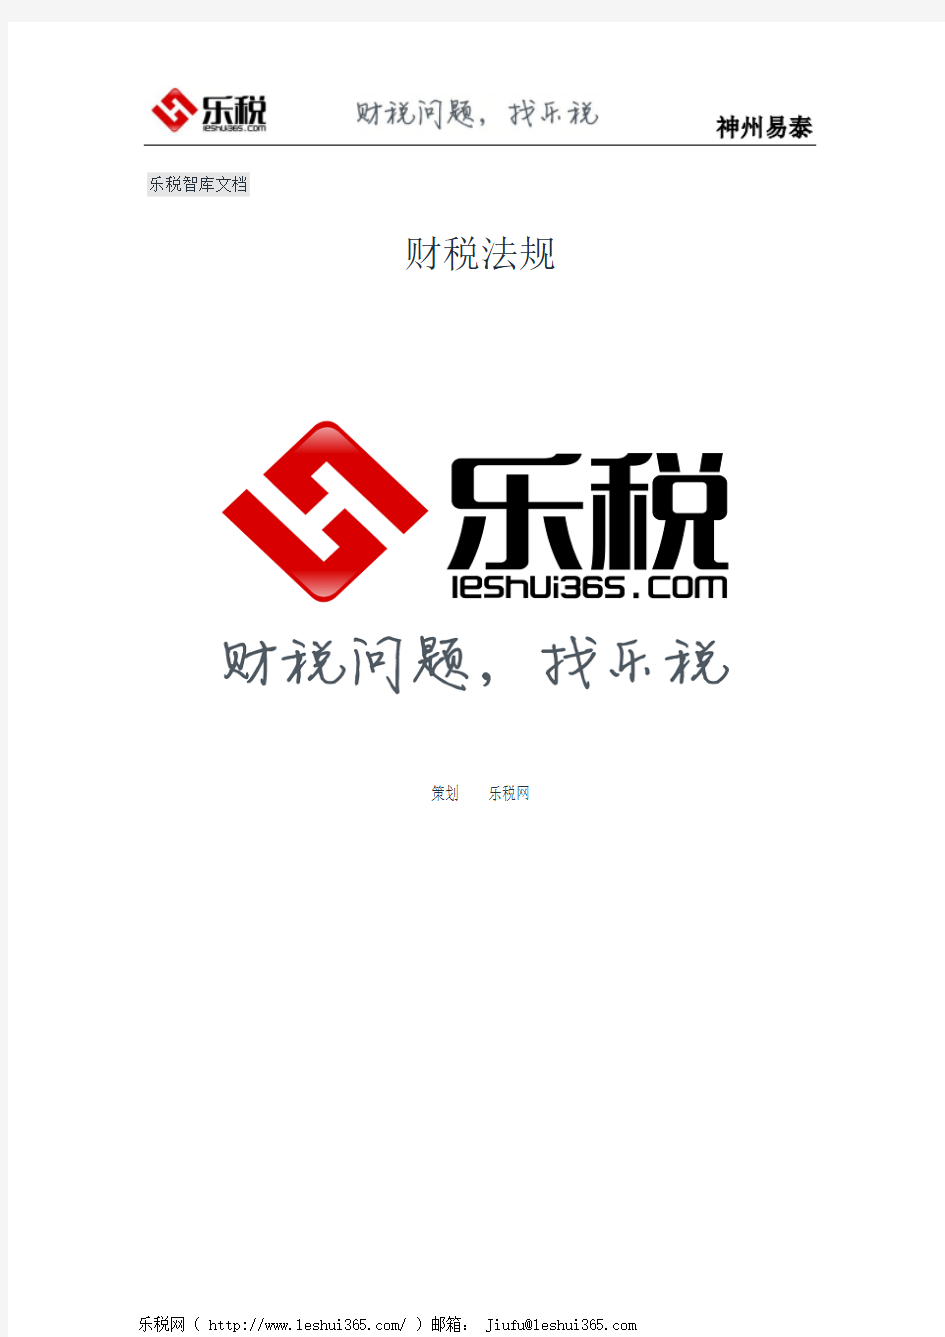 四川省人民政府关于贯彻执行《中华人民共和国房产税暂行条例》和